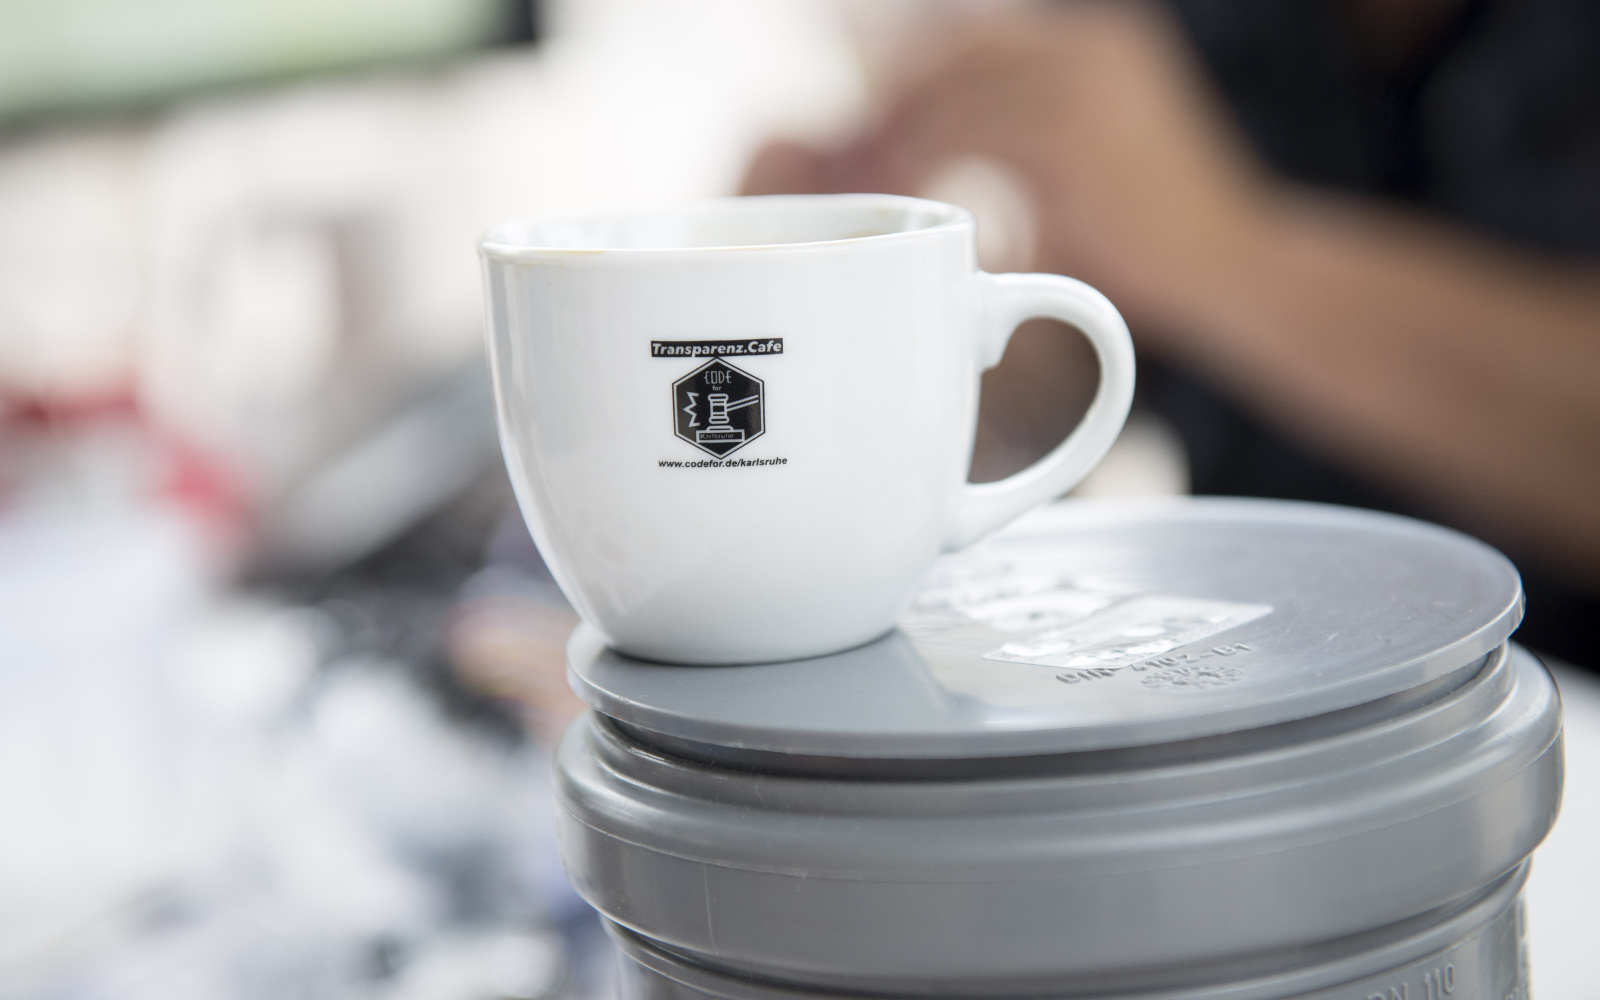 Zu sehen ist eine weiße Kaffetasse auf der das Transparenz Cafè Logo zu sehen ist.